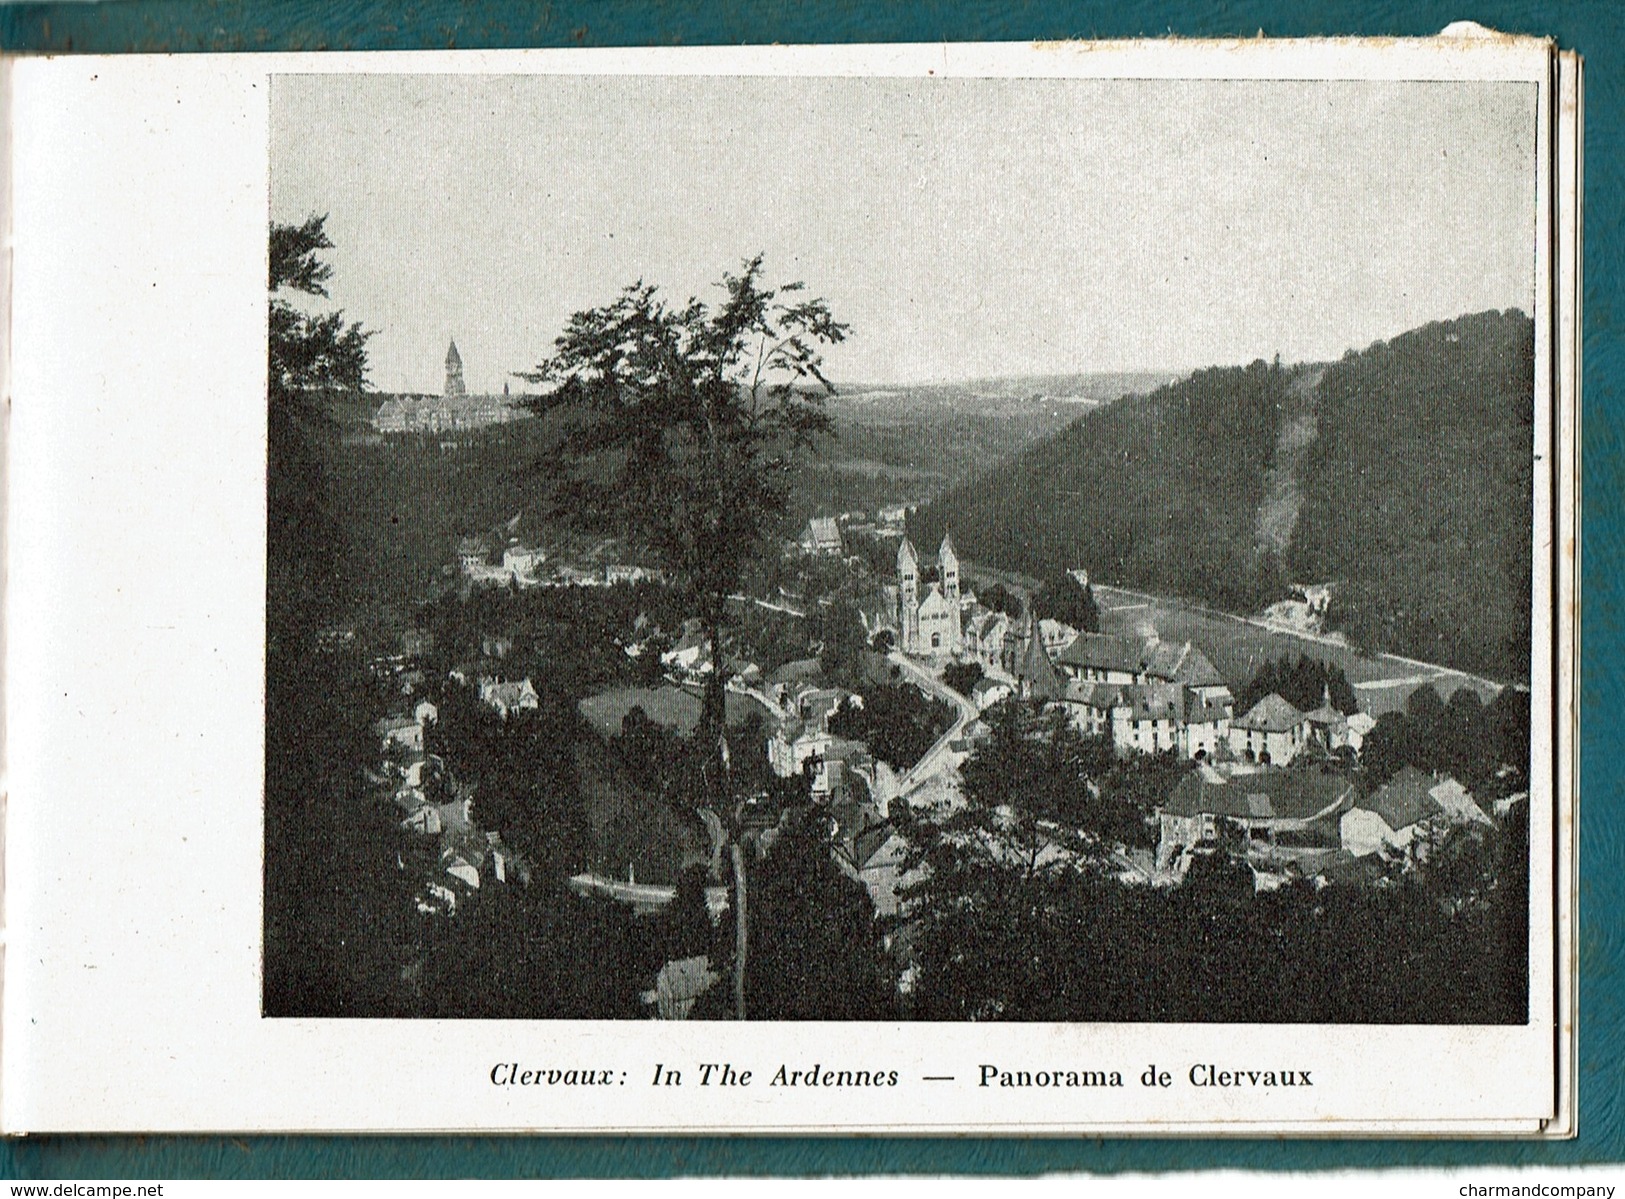 Souvenir de Luxembourg - c1920 ?? - Villes et paysages du Luxembourg - 28 pages - 26 vues - 8 scans